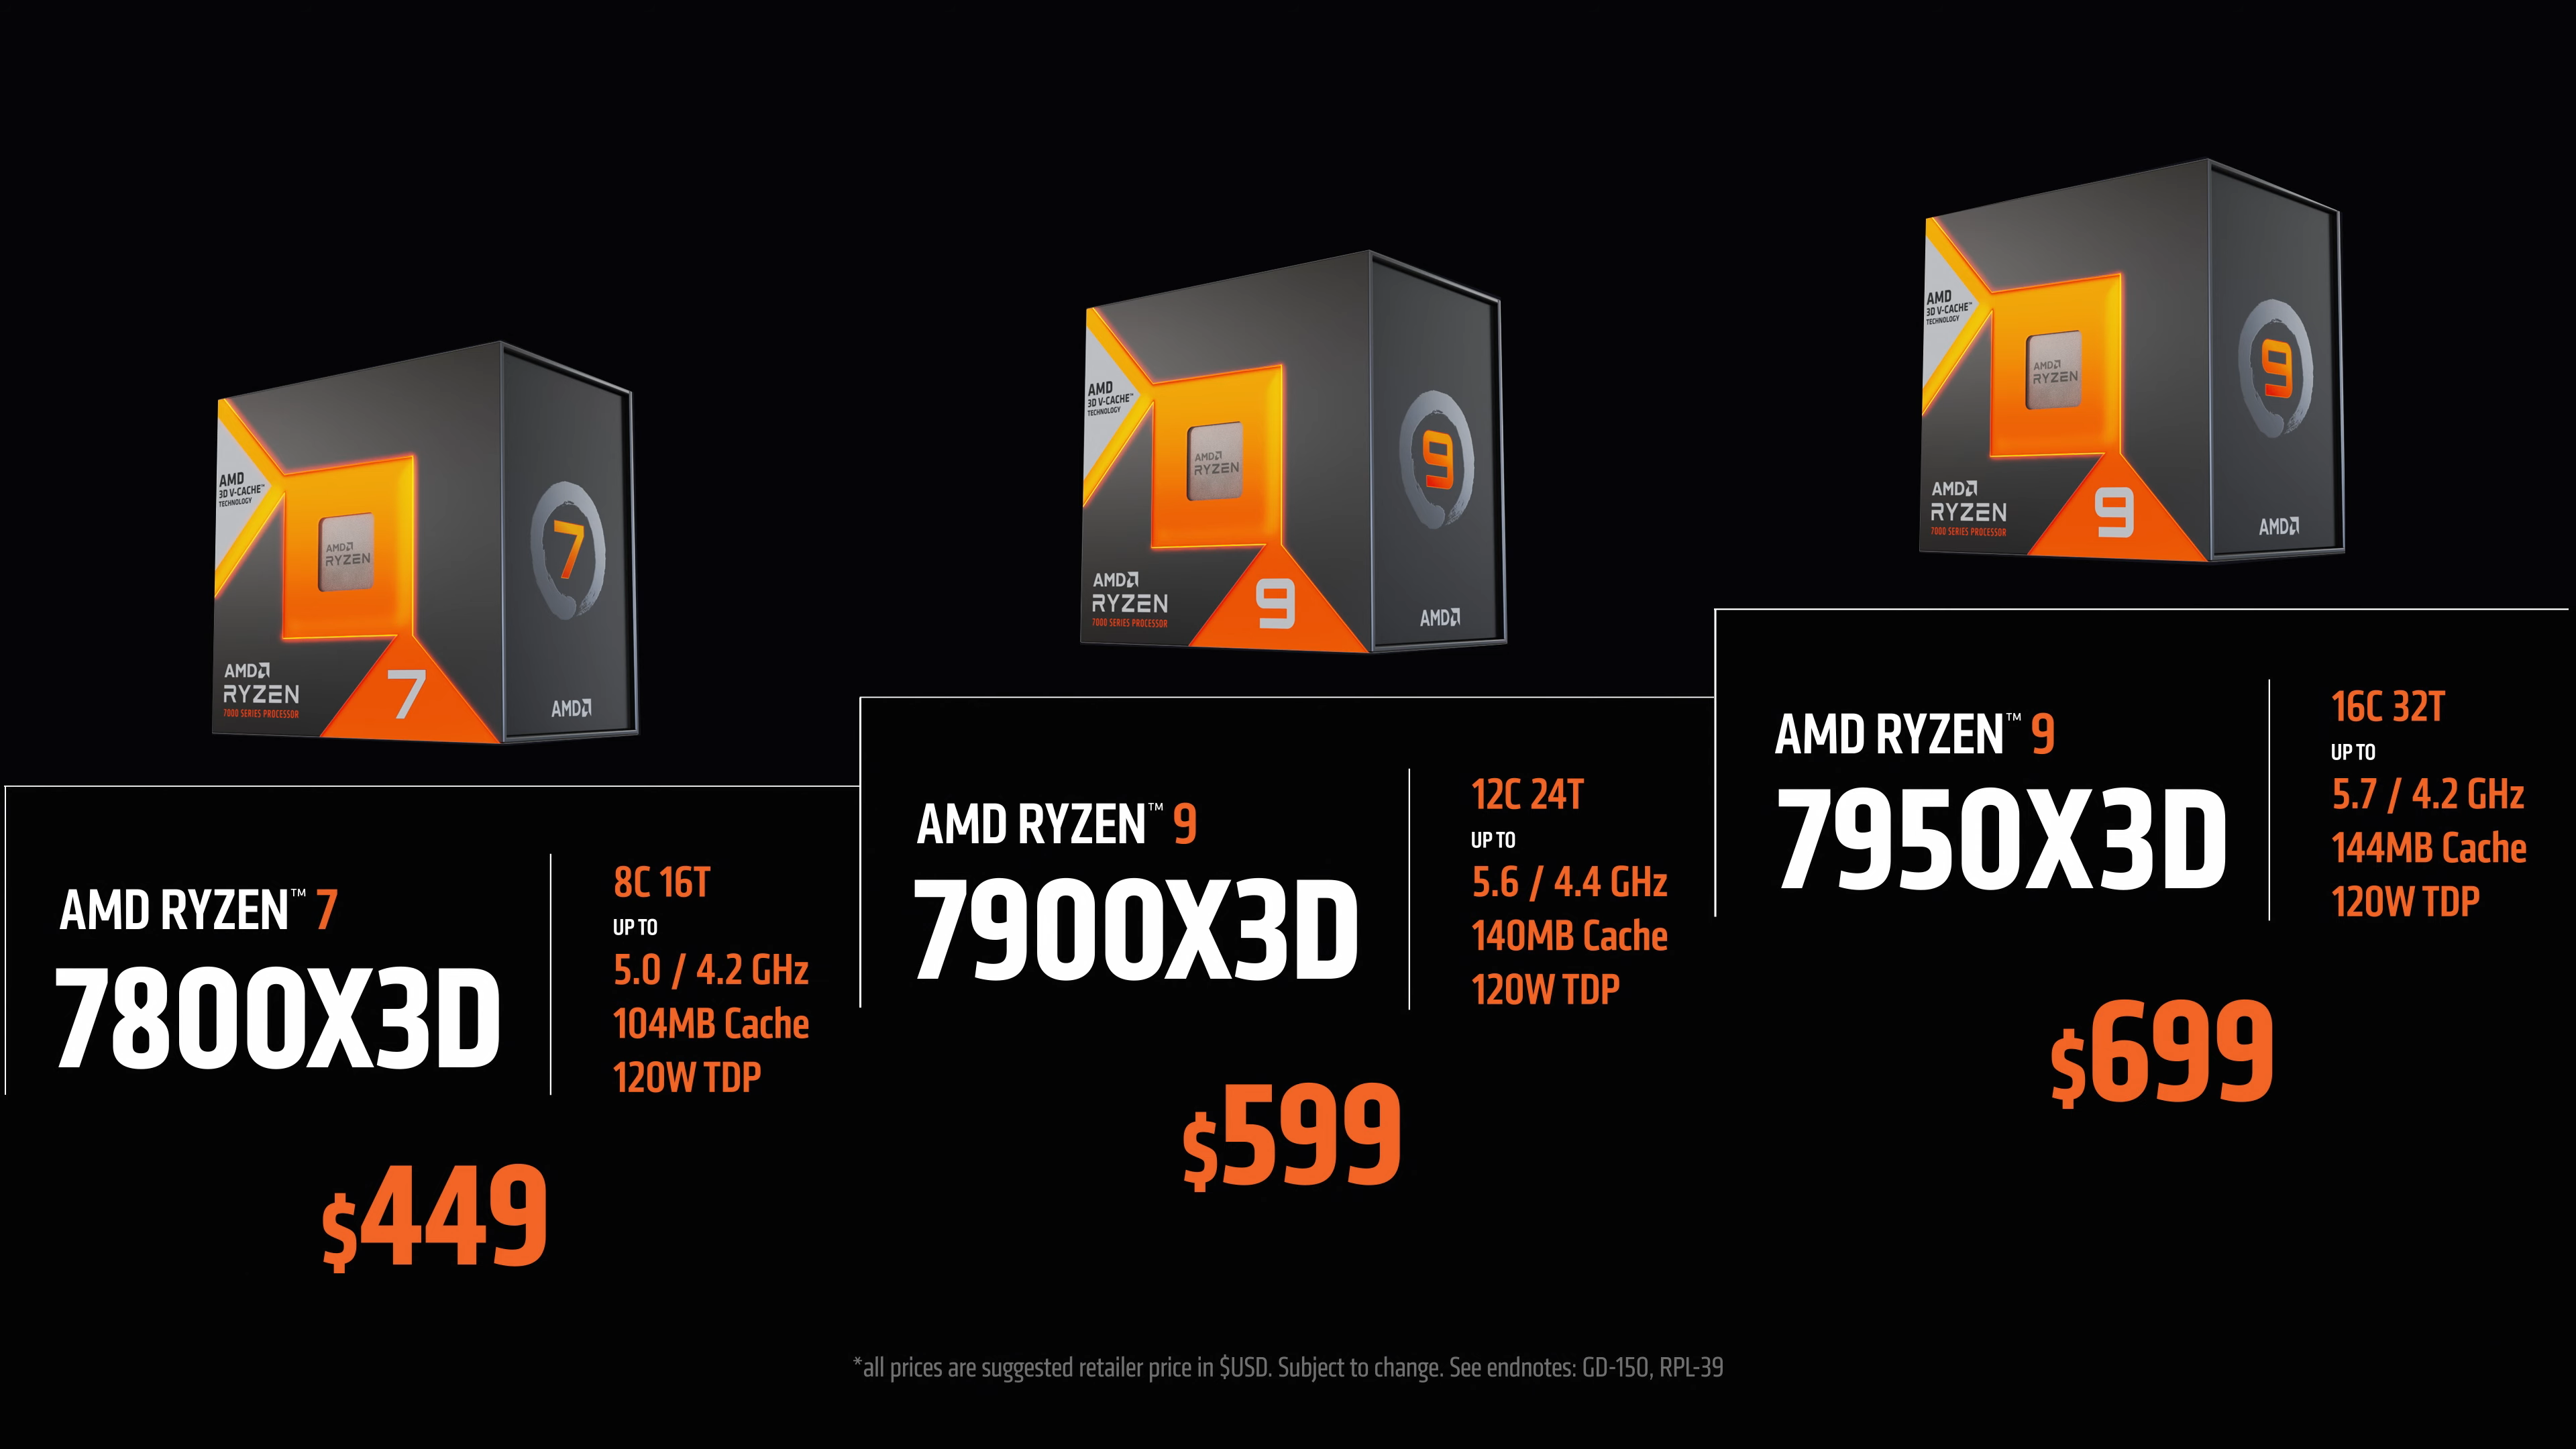 Prosesor gaming AMD Ryzen 7000X3D pertama tiba pada 28 Februari